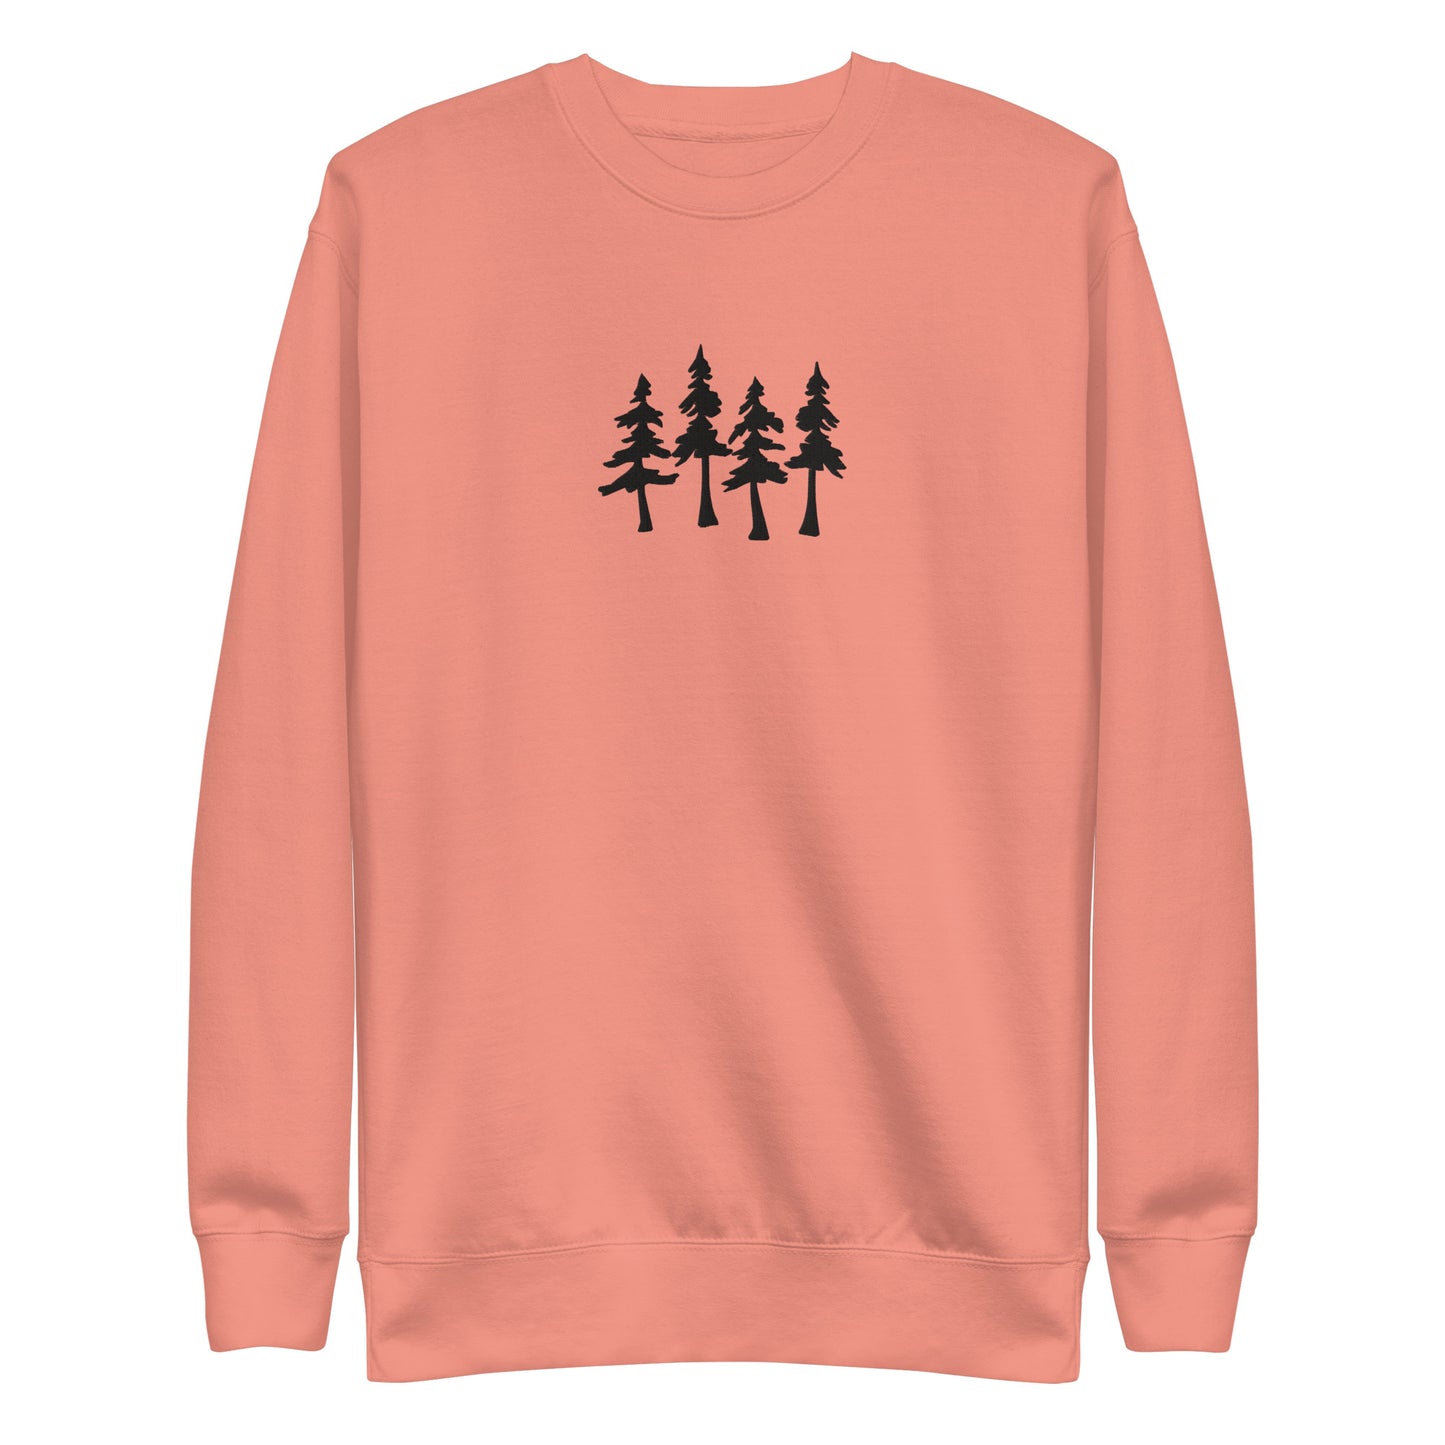 pining for you sweatshirt (matching set)